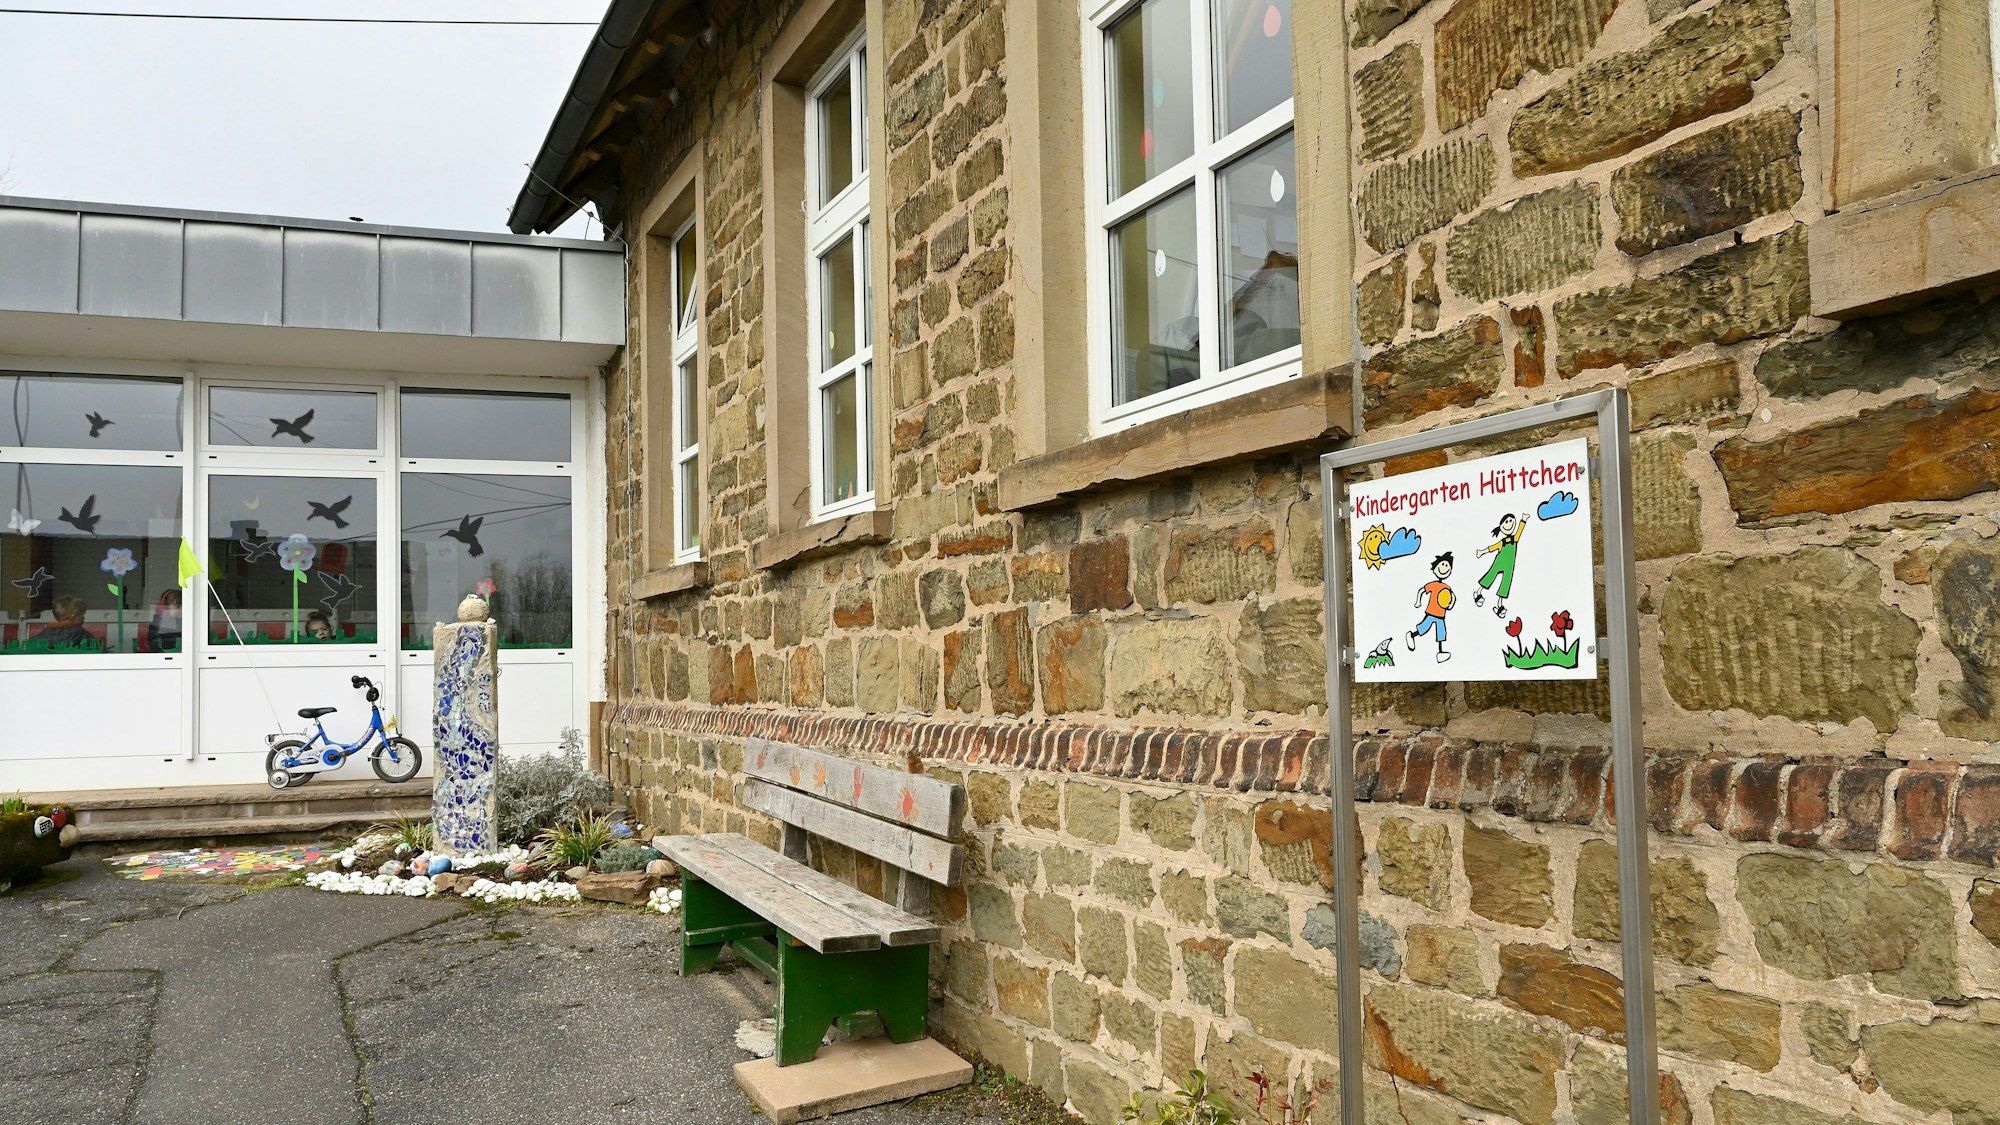 Kindergarten Odenthal-Hüttchen, Altbau mit Anbau, davor eine Sitzbank.